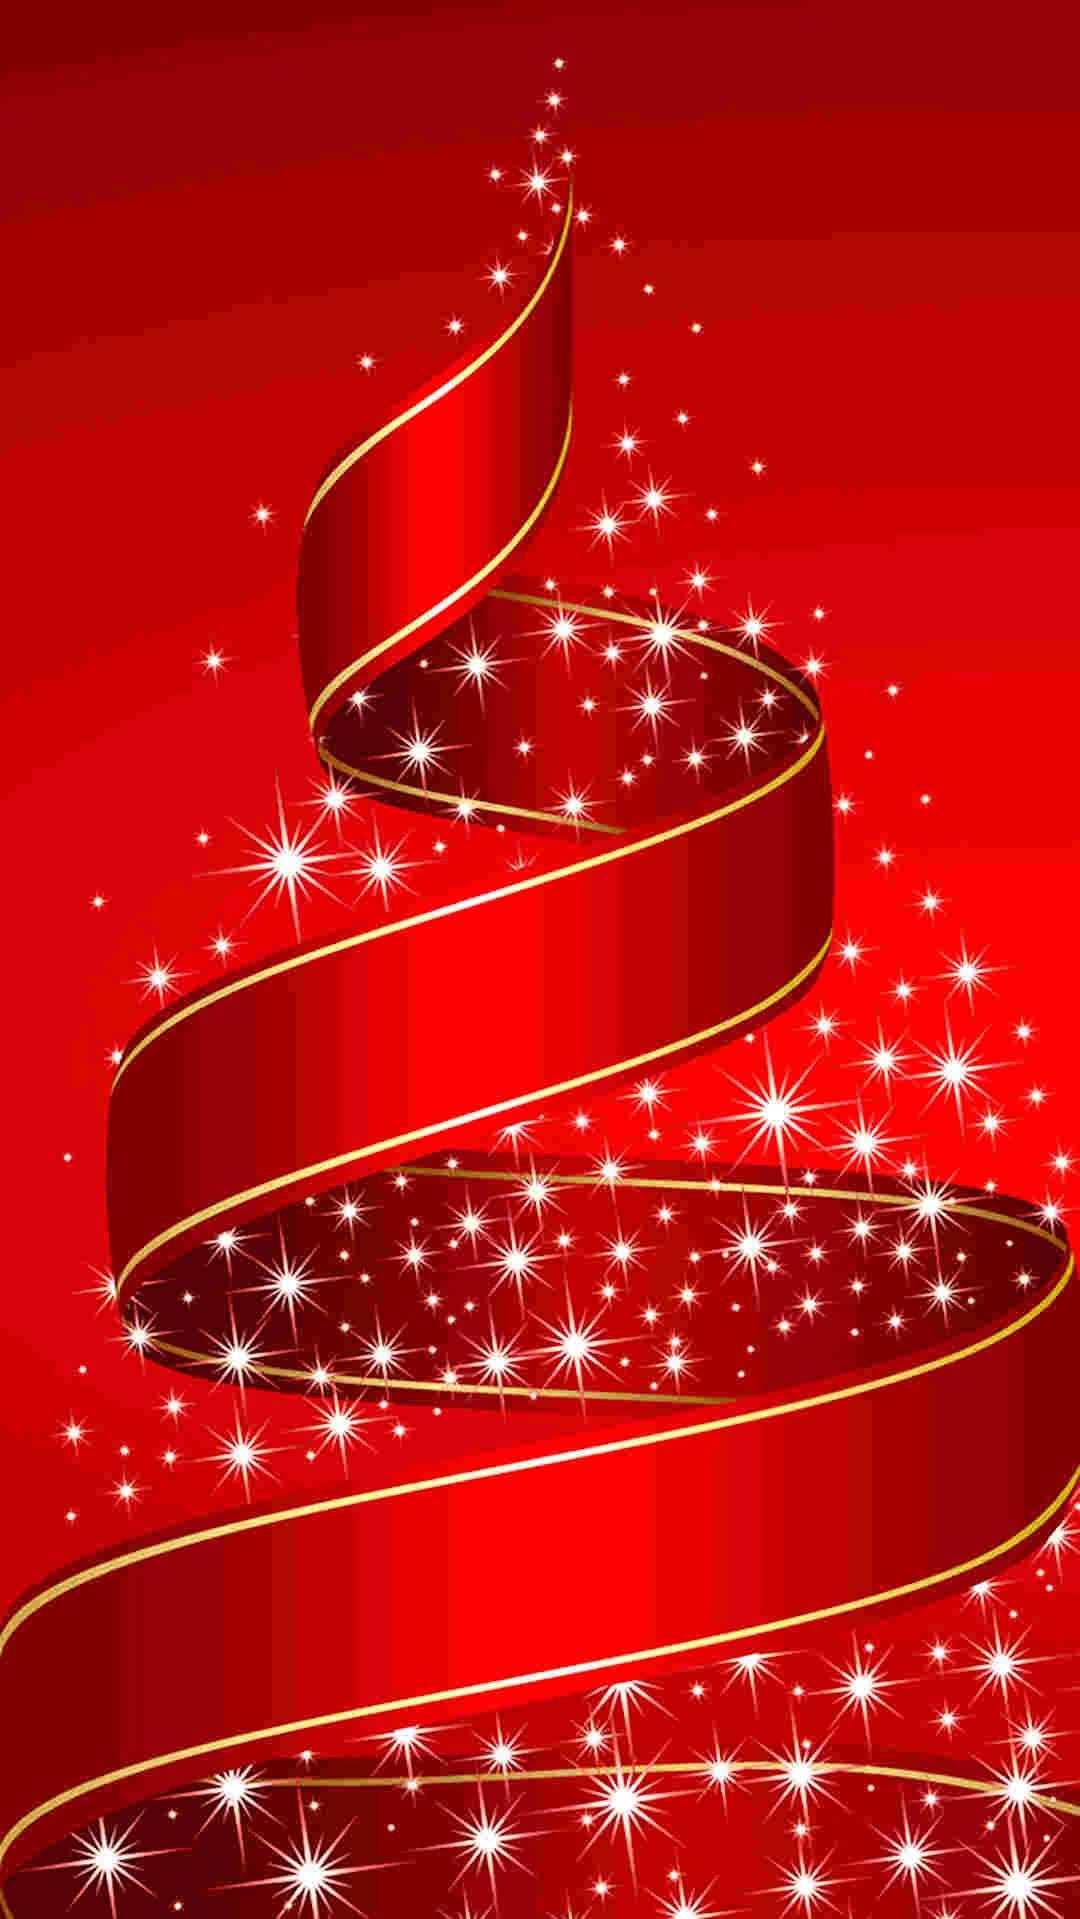 クリスマスの電話の壁紙,赤,クリスマスの飾り,クリスマスツリー,図,グラフィックス